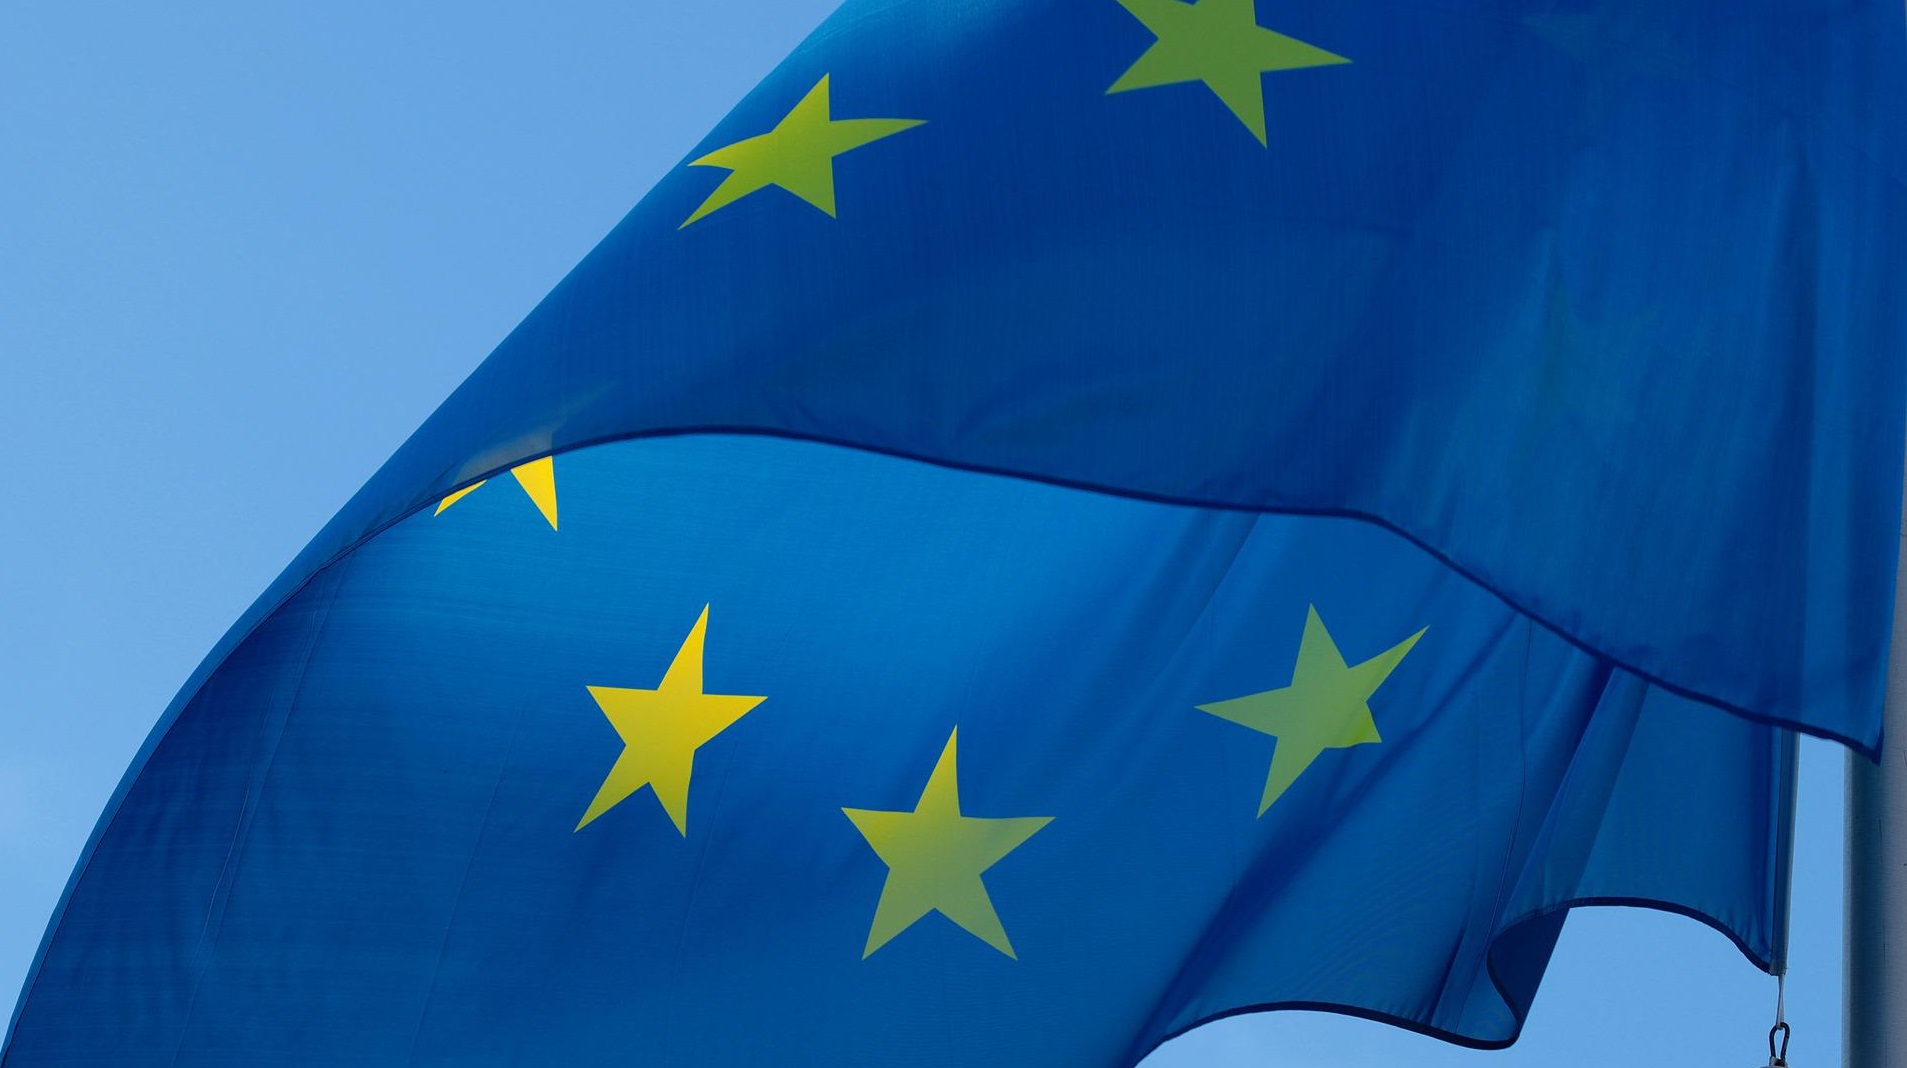 Zu sehen ist die europäische Flagge, welche im Kreis angeordnete Sterne zeigt und einen blauen Hintergrund hat.